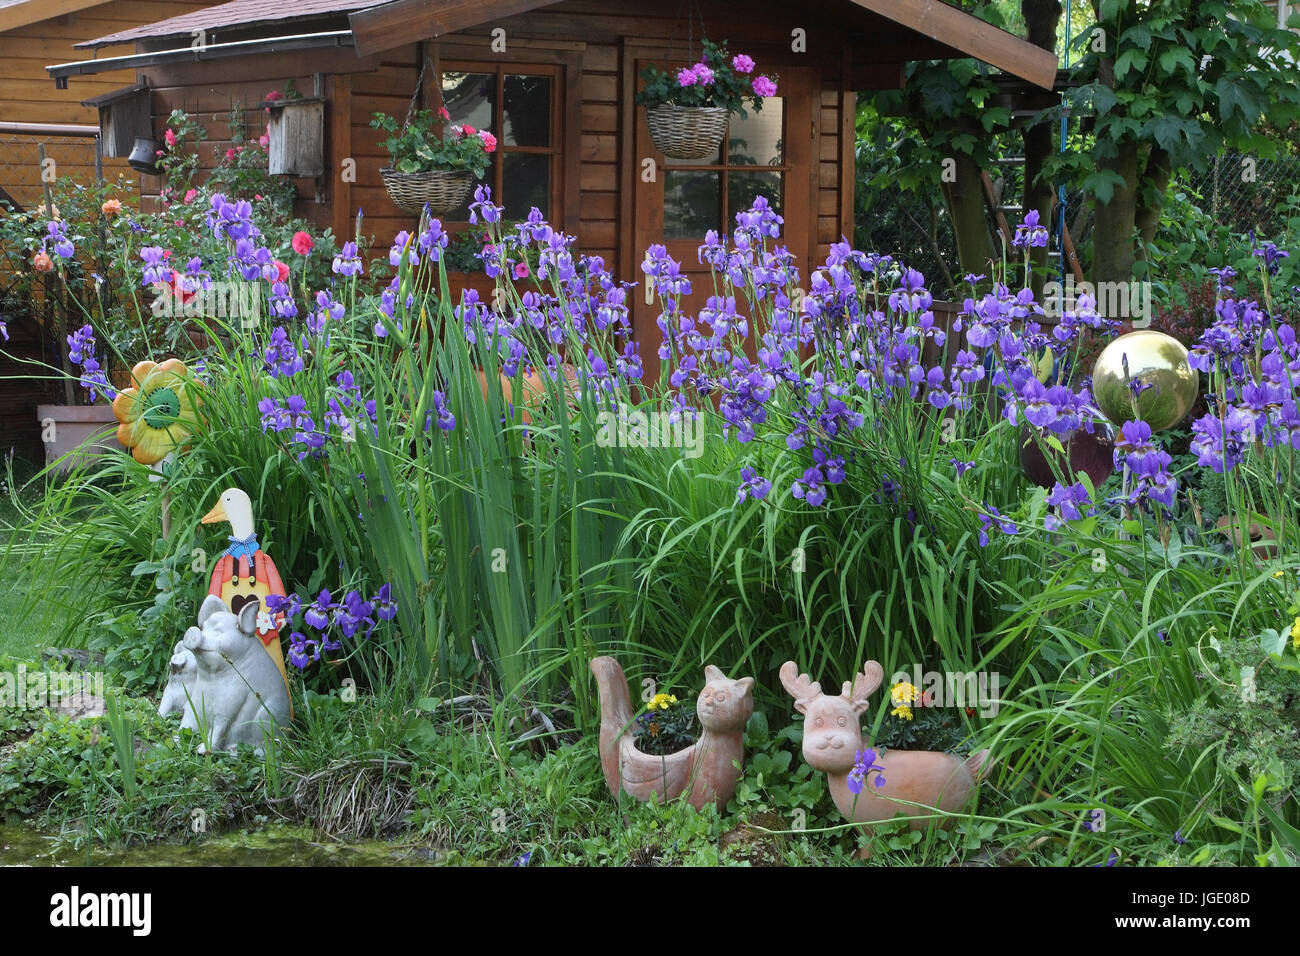 Summer house and Siberian irises in the pond, Gartenhaus und Sibirische Schwertlilien am Teich Stock Photo